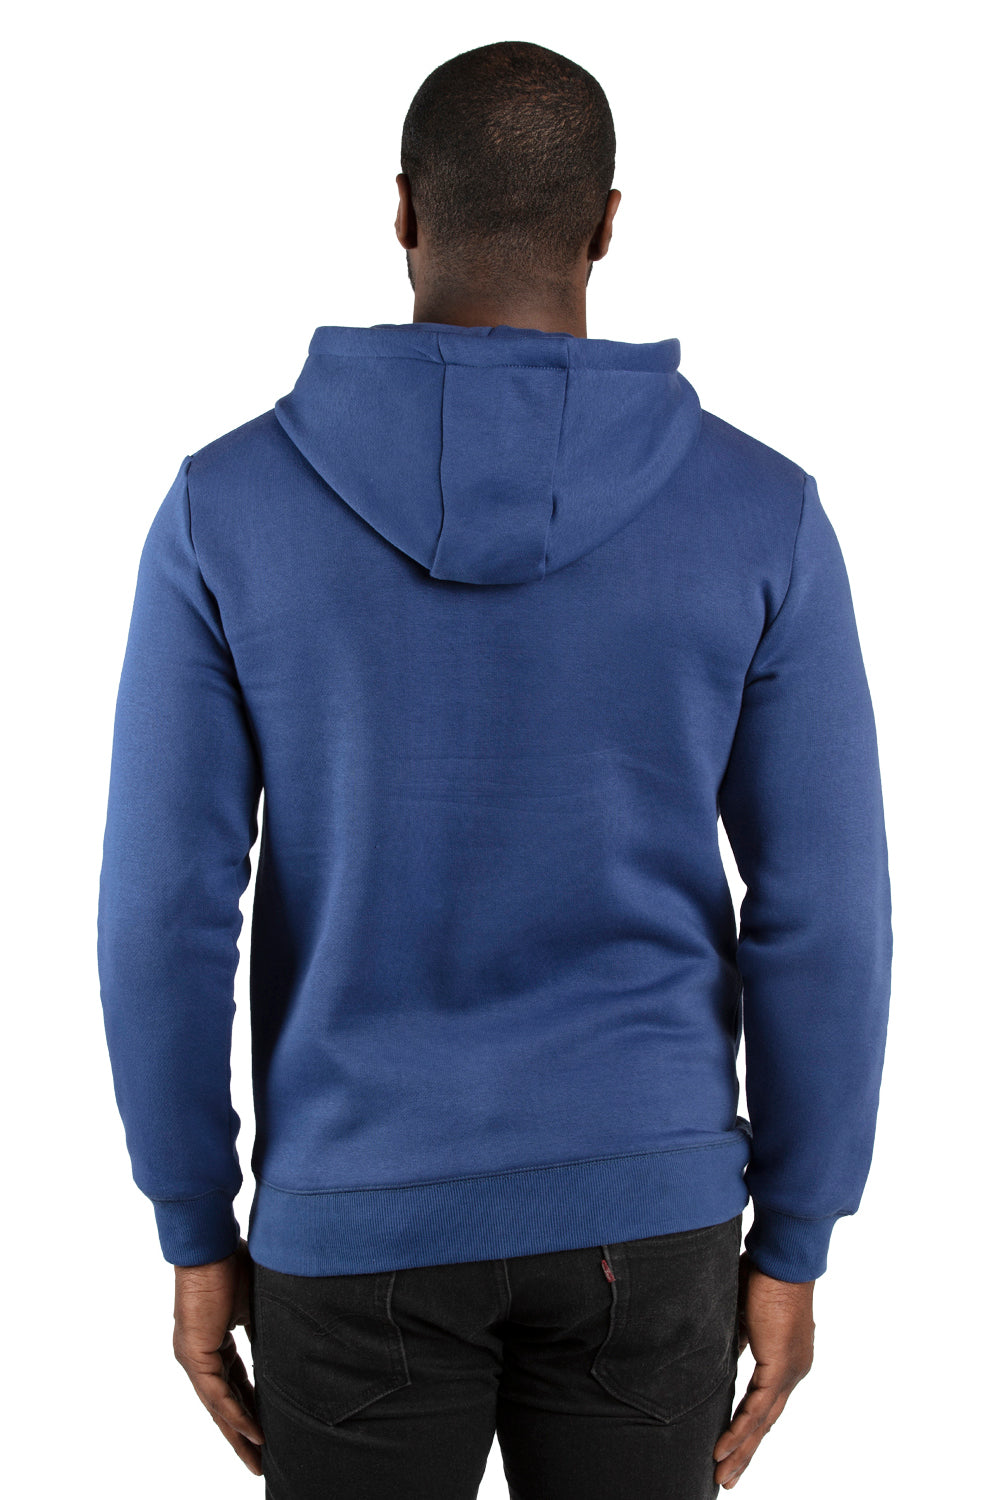 Threadfast Apparel 320H Mens Ultimate Fleece Hooded Sweatshirt Hoodie Navy Blue Back